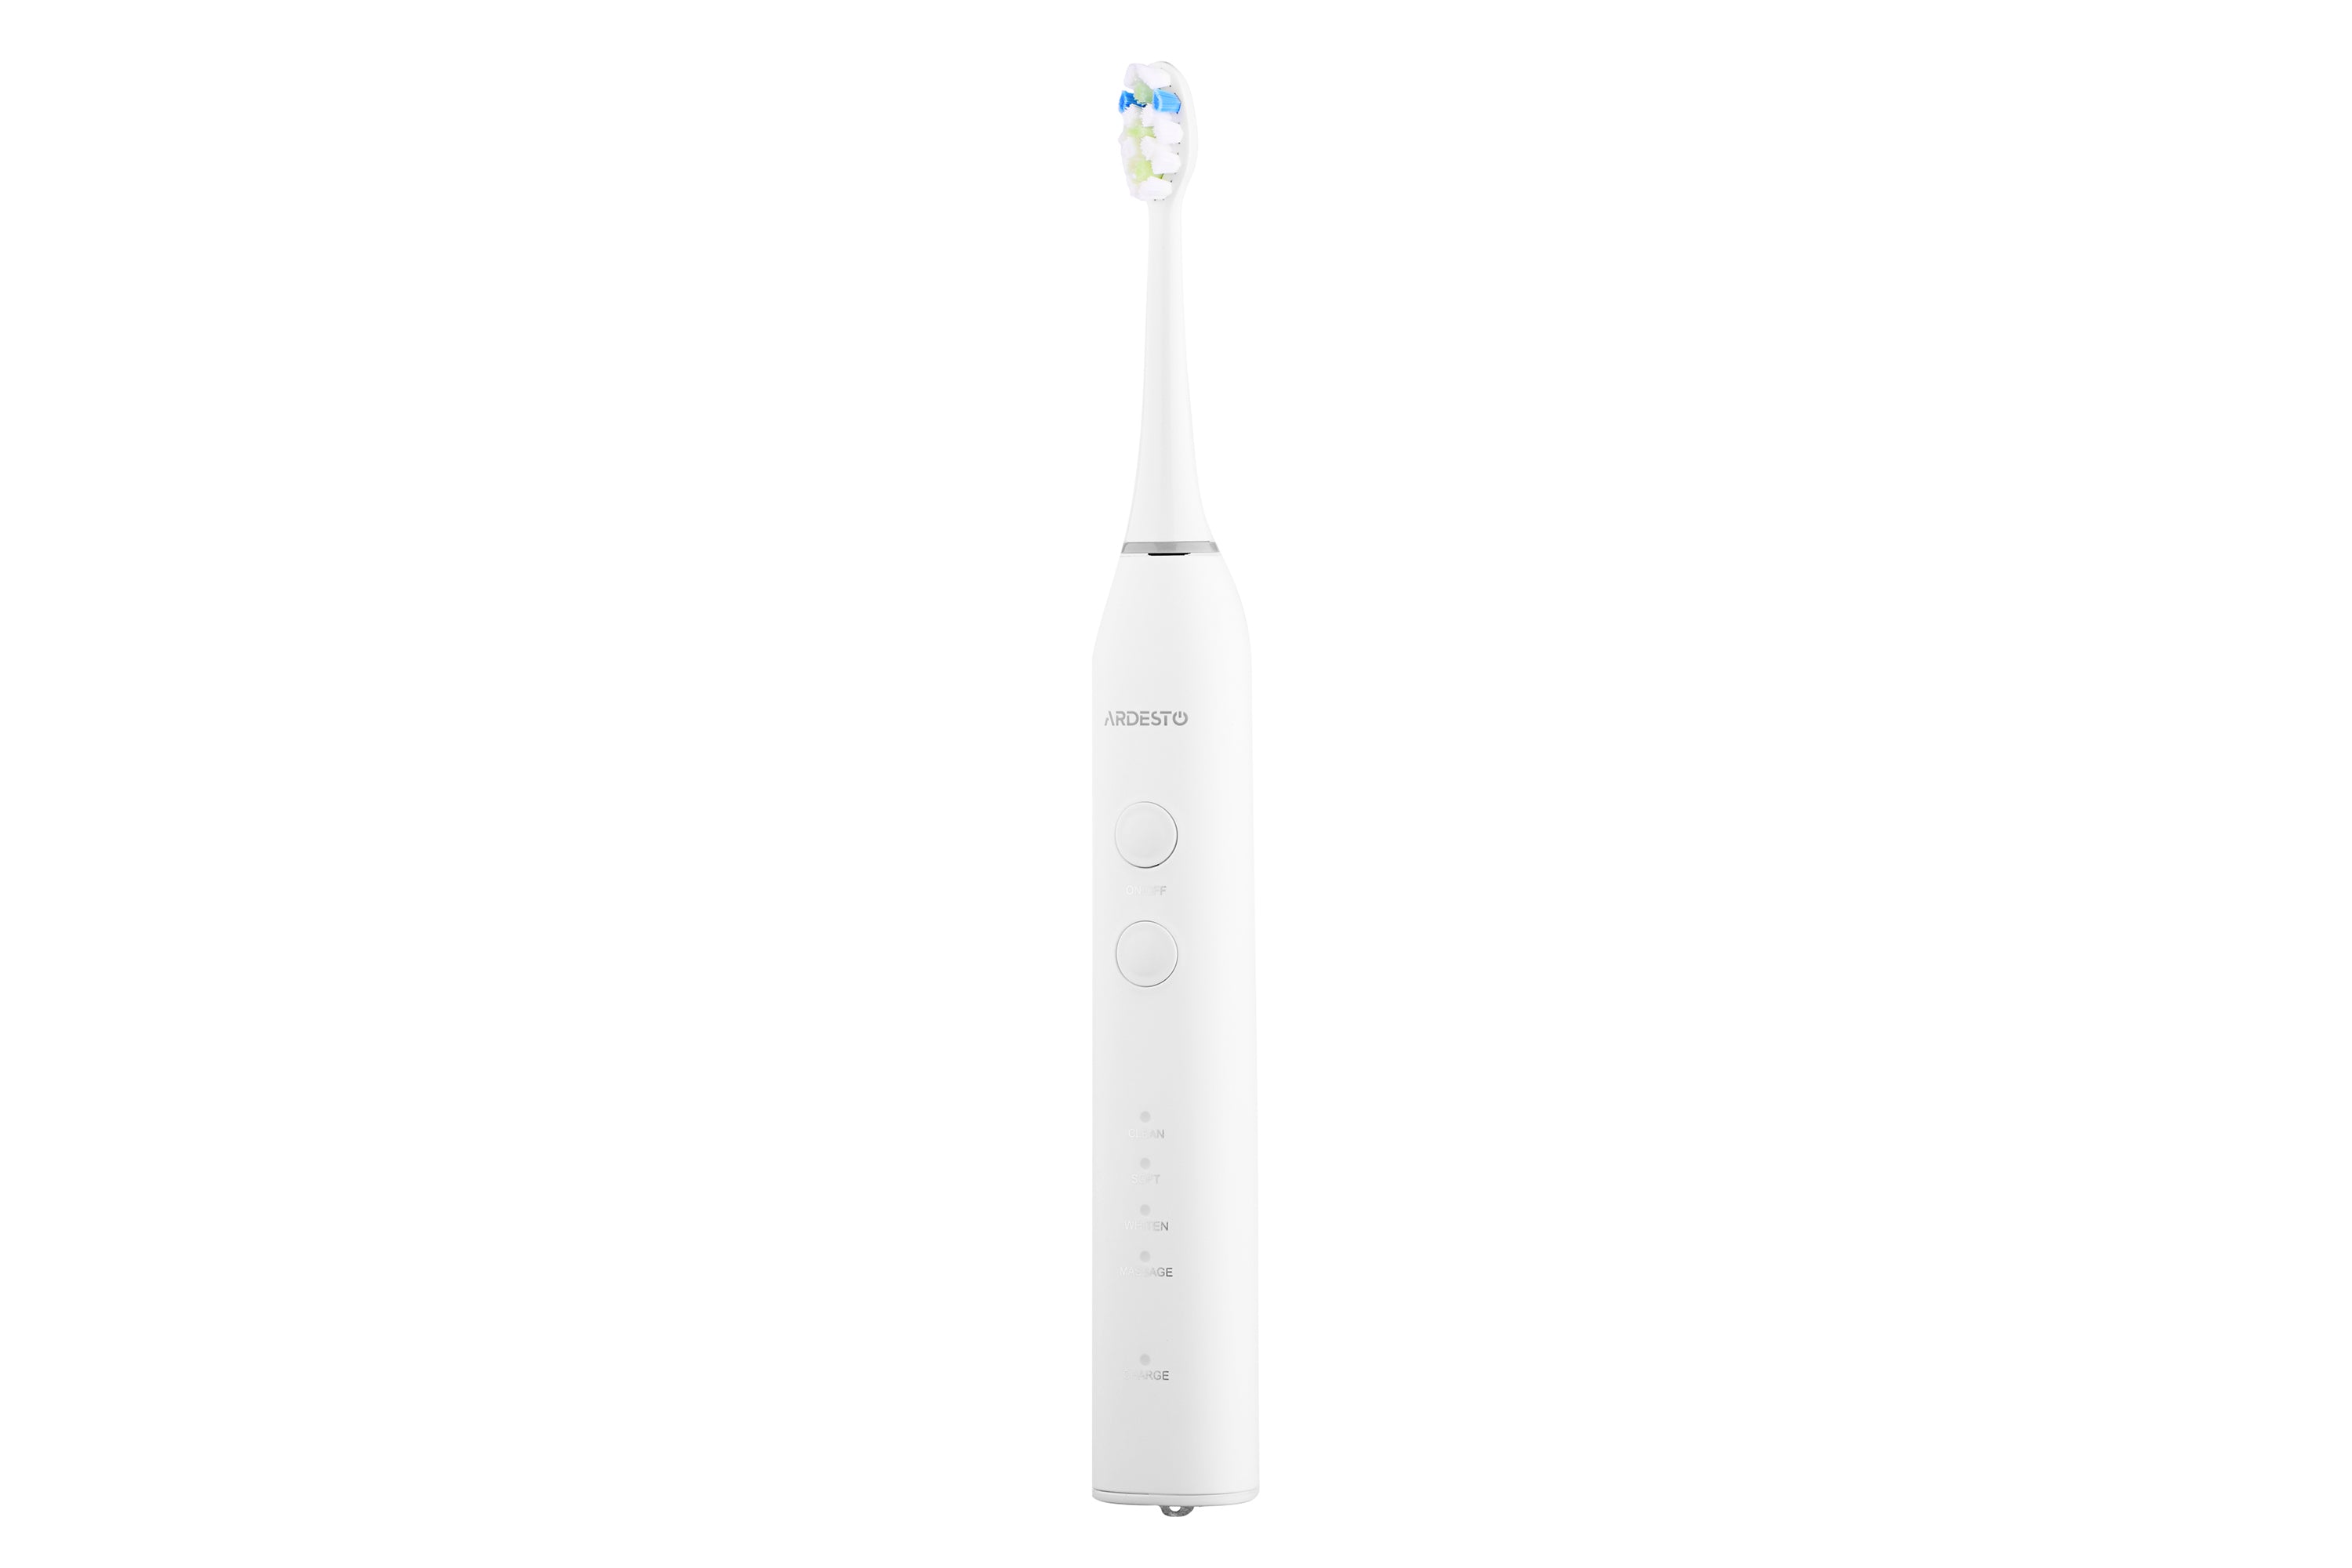 ირიგატორი + ელექტრო კბილის ჯაგრისი Ardesto OI-R600WTB, Oral Irrigator 600ml + Electric Toothbrus 2 in 1 White